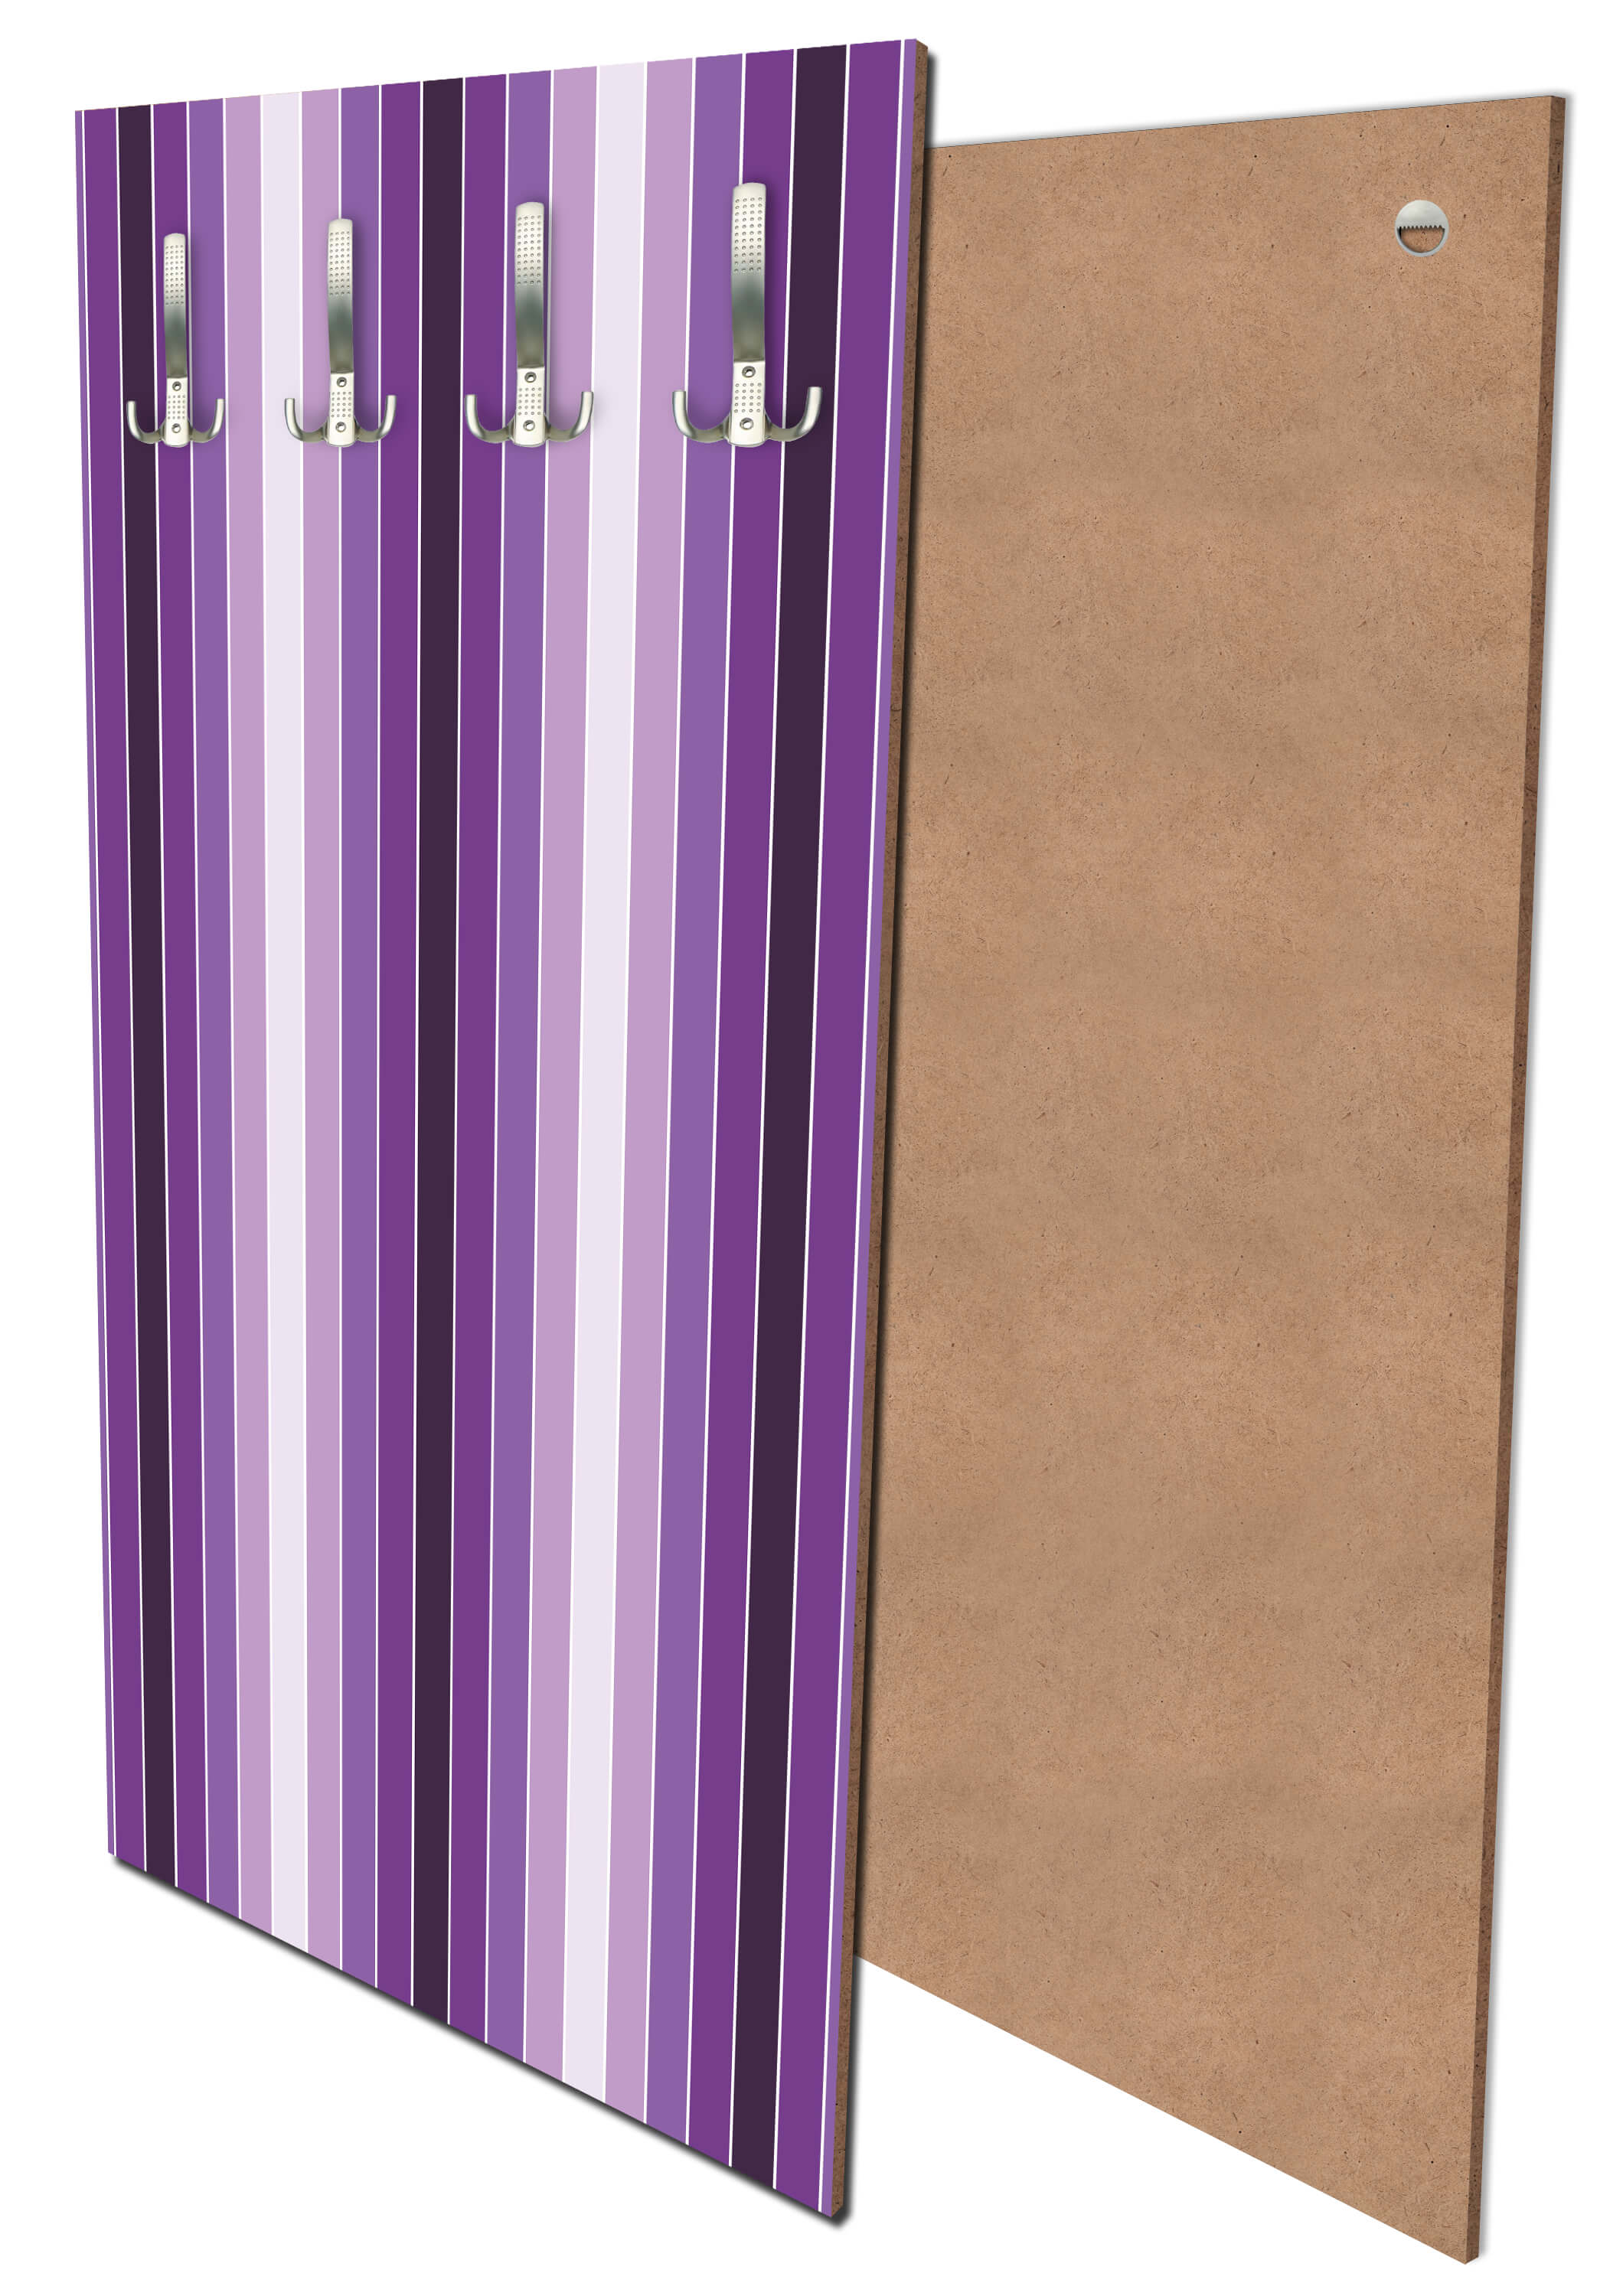 Garderobe Leuchtendes Violett Muster M0092 entdecken - Bild 1